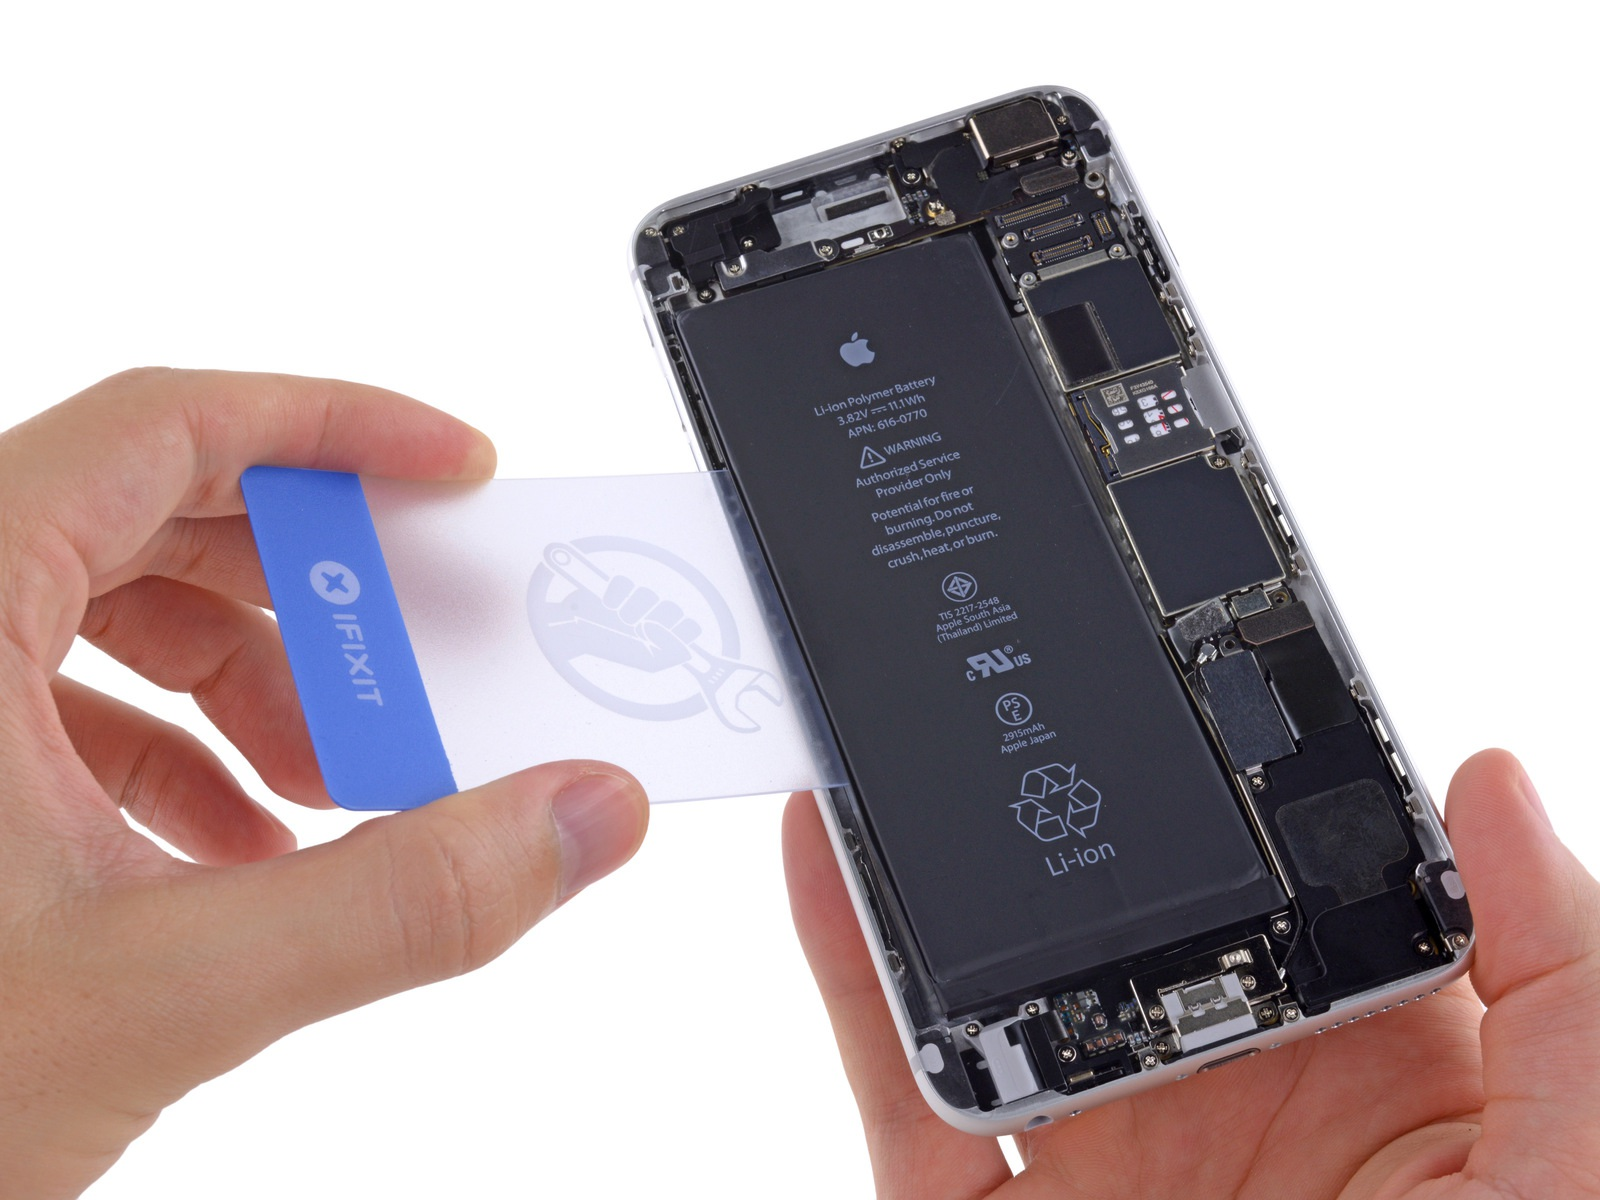 Stap 27 Draai de iphone terug over en plaats een plastic kaartje tussen de linkerkant van de batterij en de achterzijde geval.